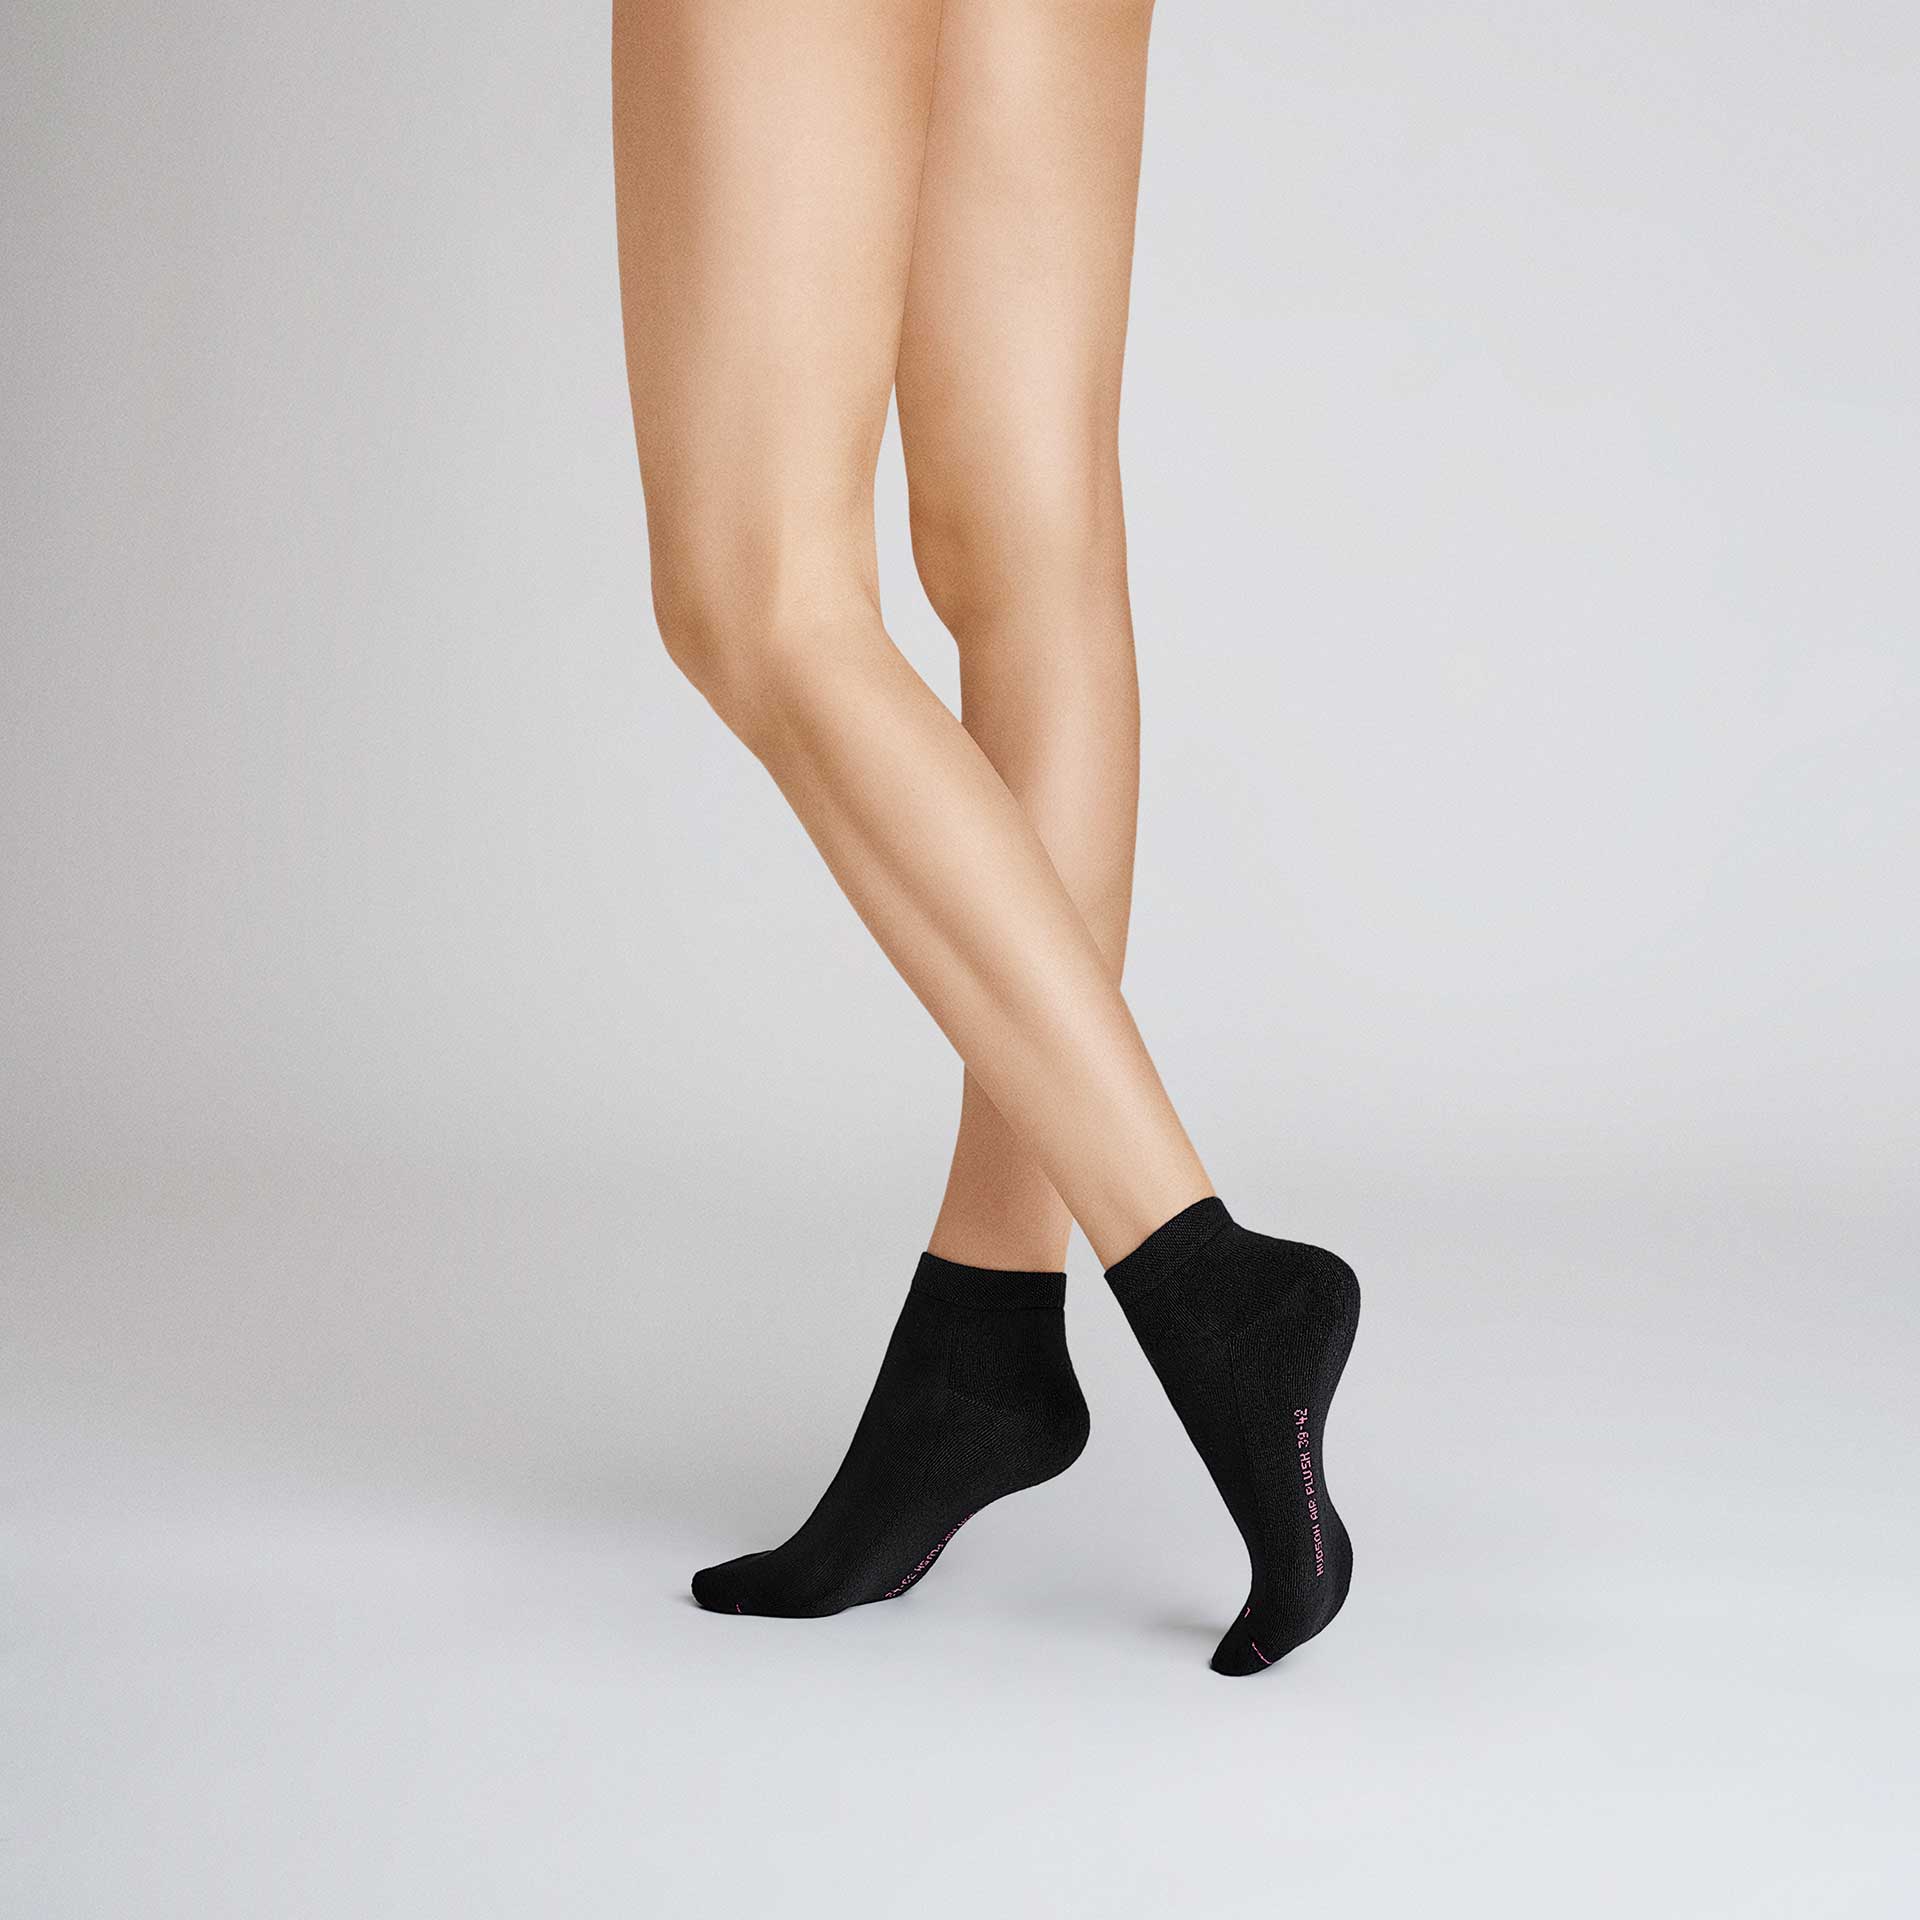 HUDSON Damen AIR PLUSH -  39/42 - Sneaker Socken mit anatomisch geformter Plüschsohle - Black (Schwarz)